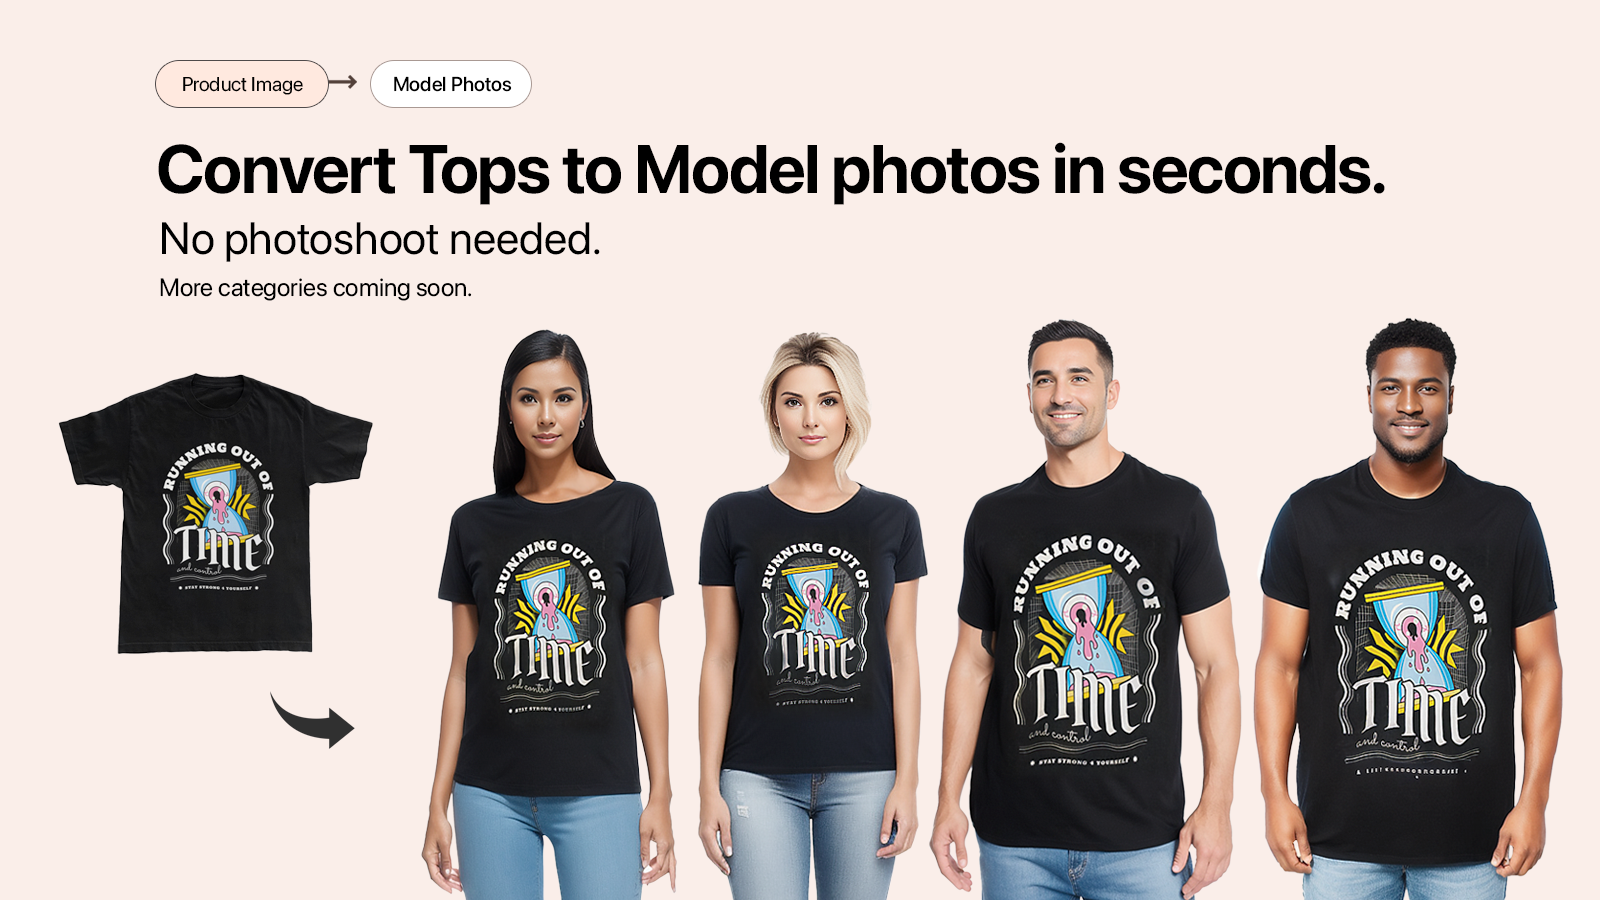 Convierte imágenes de camisetas en fotos de modelos automáticamente